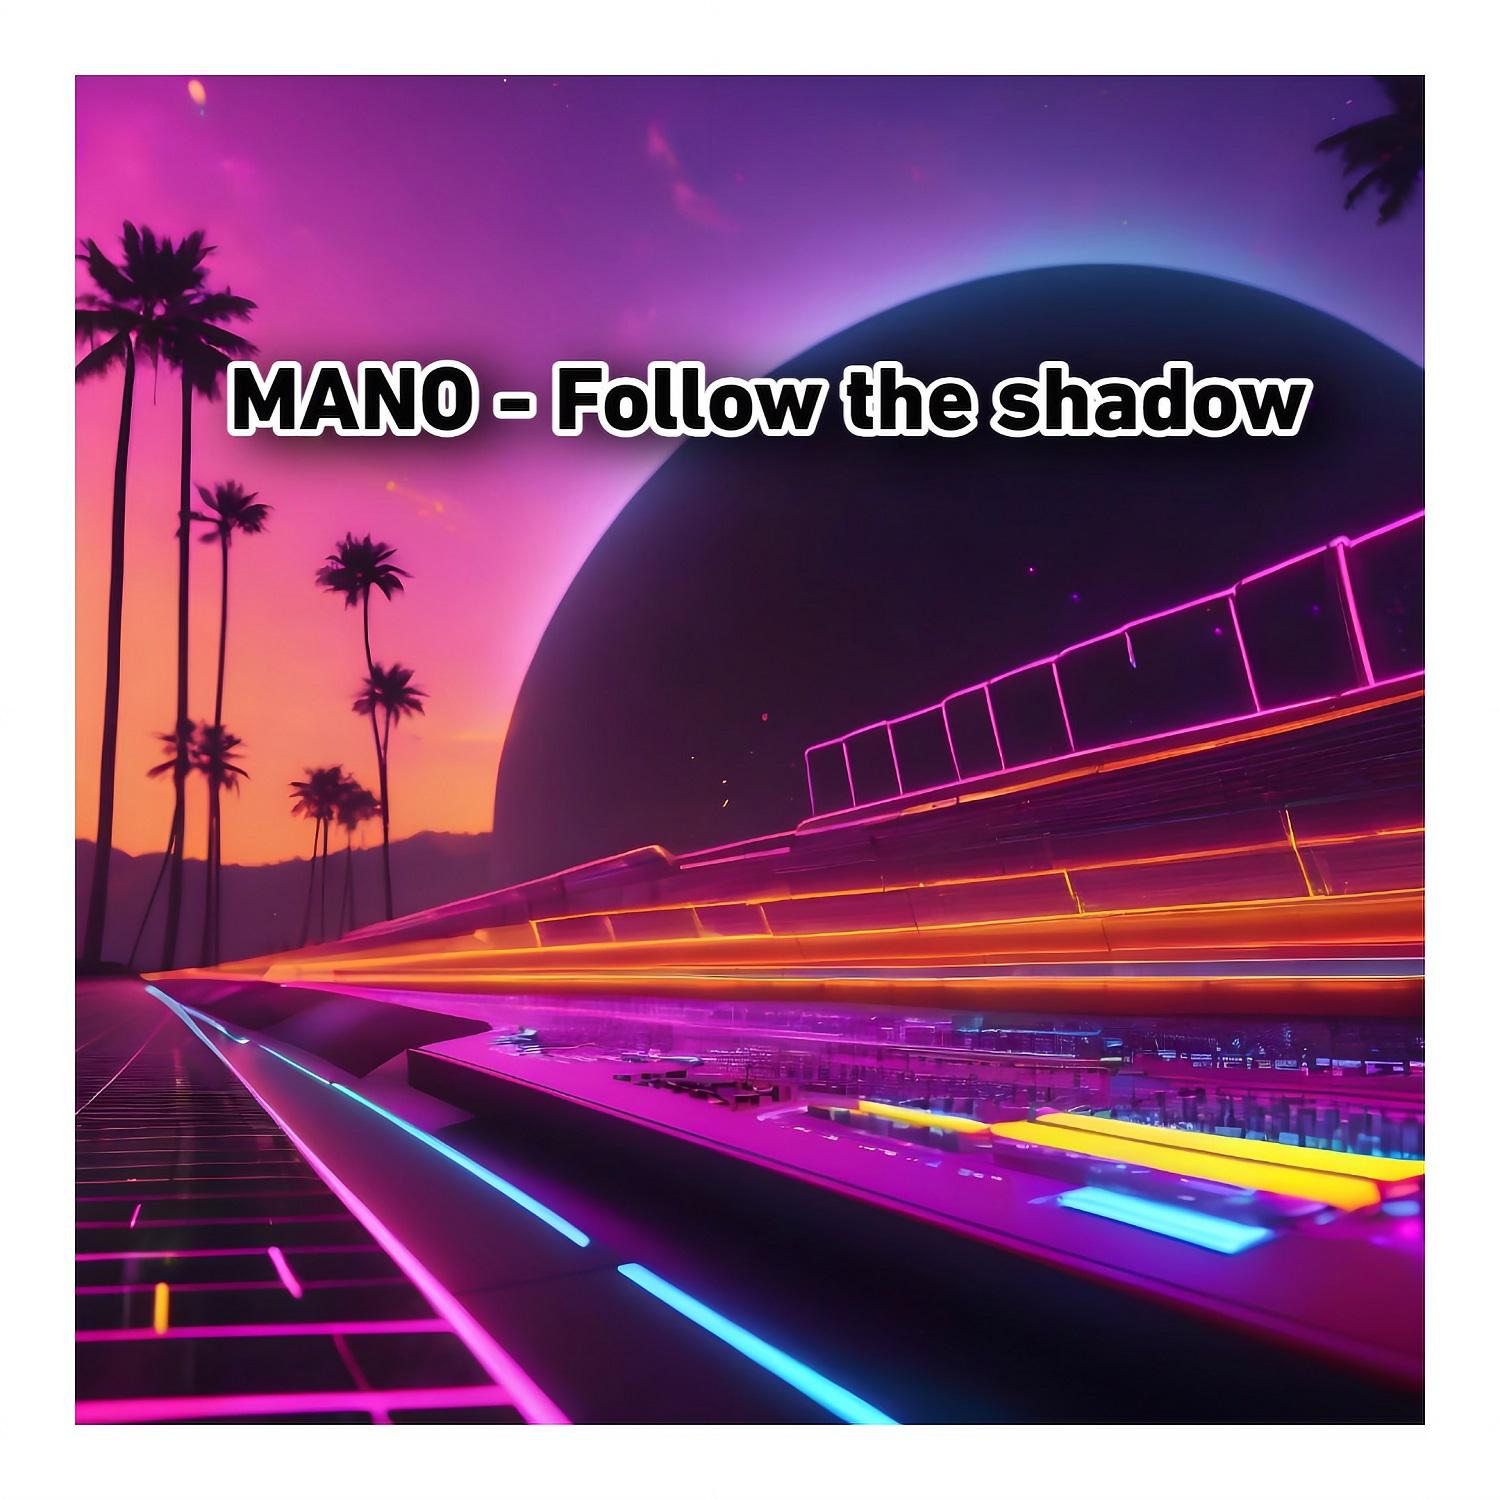 Mano - Follow the shadow